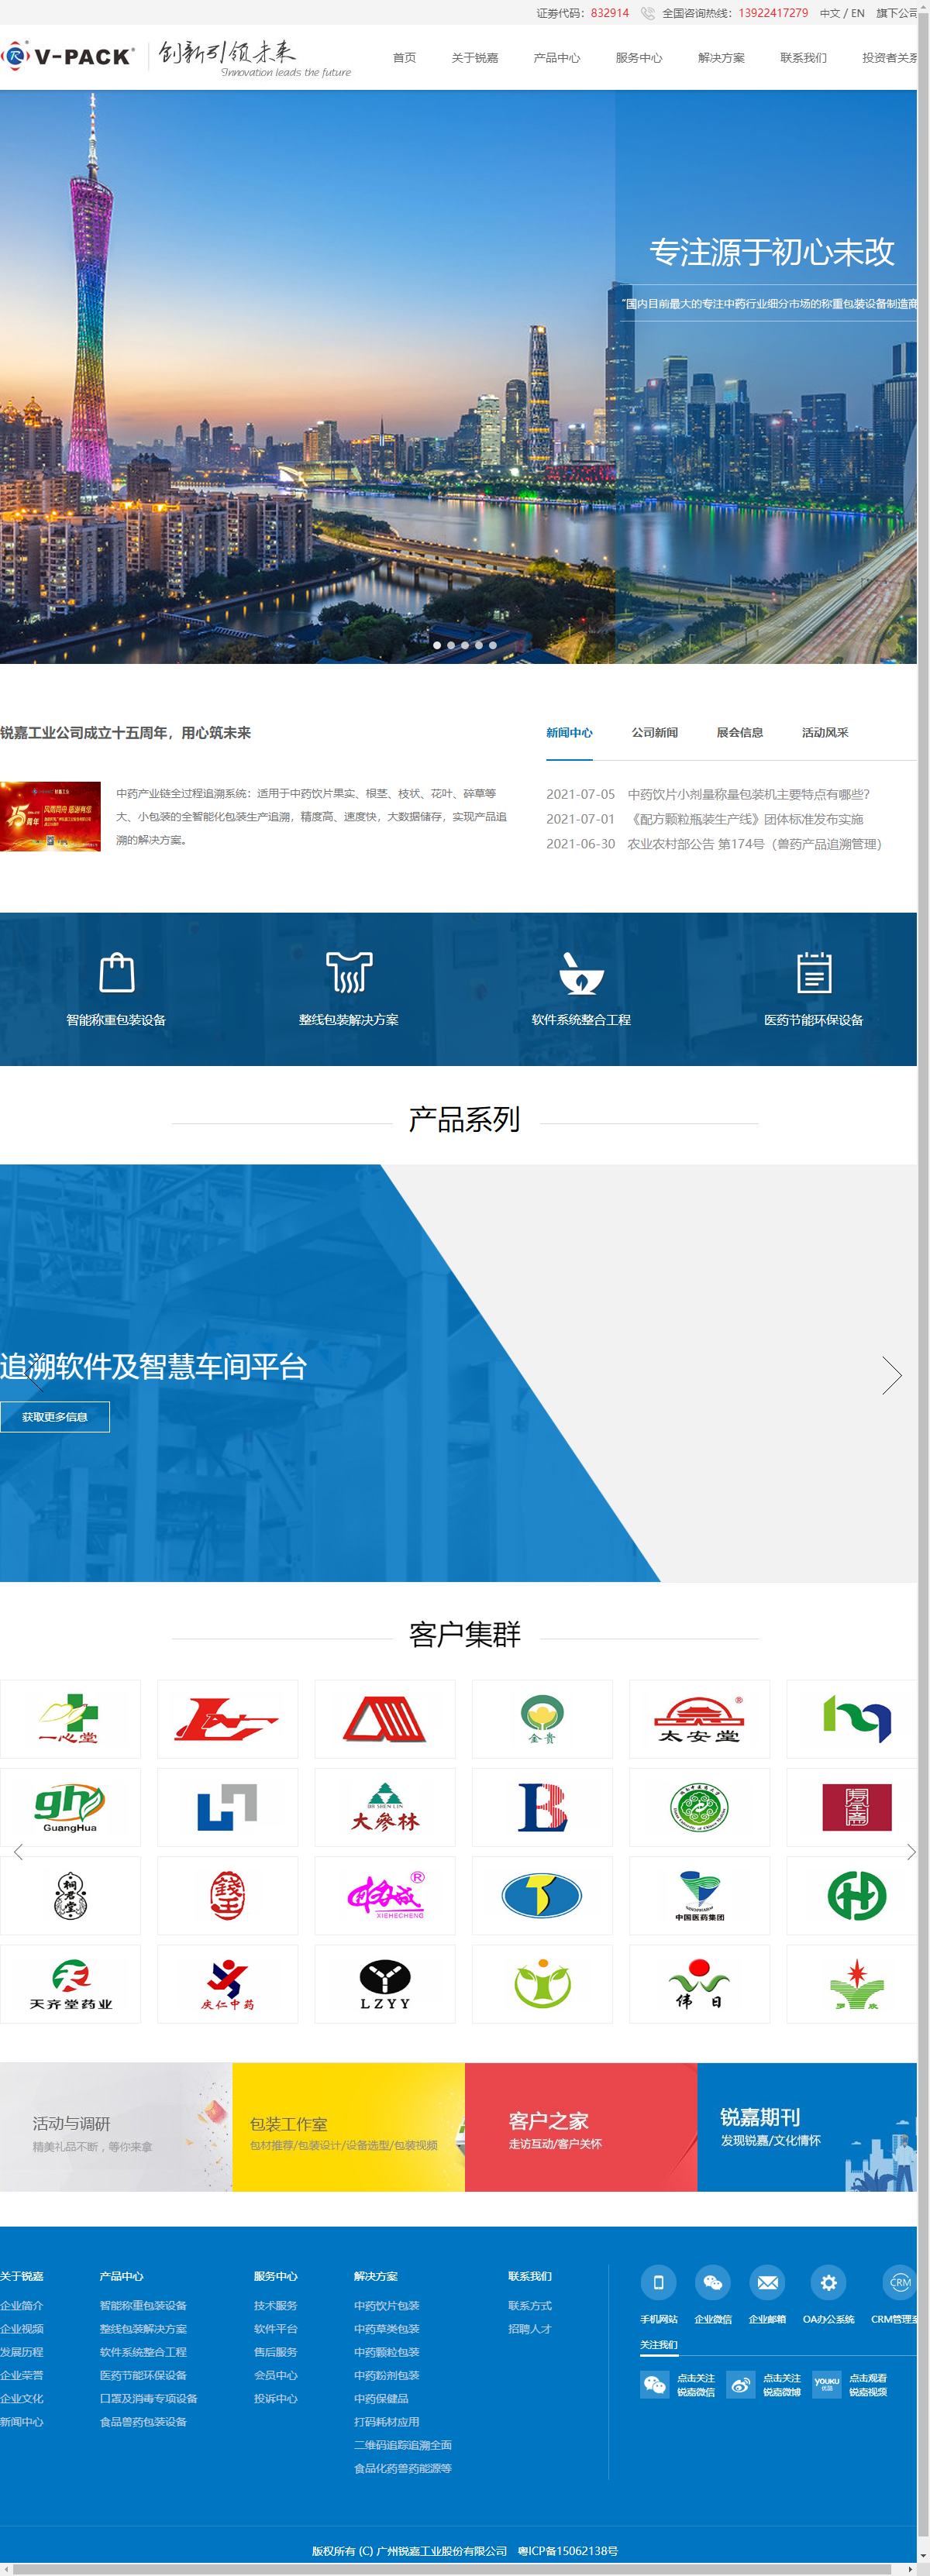 广州锐嘉工业股份有限公司网站案例